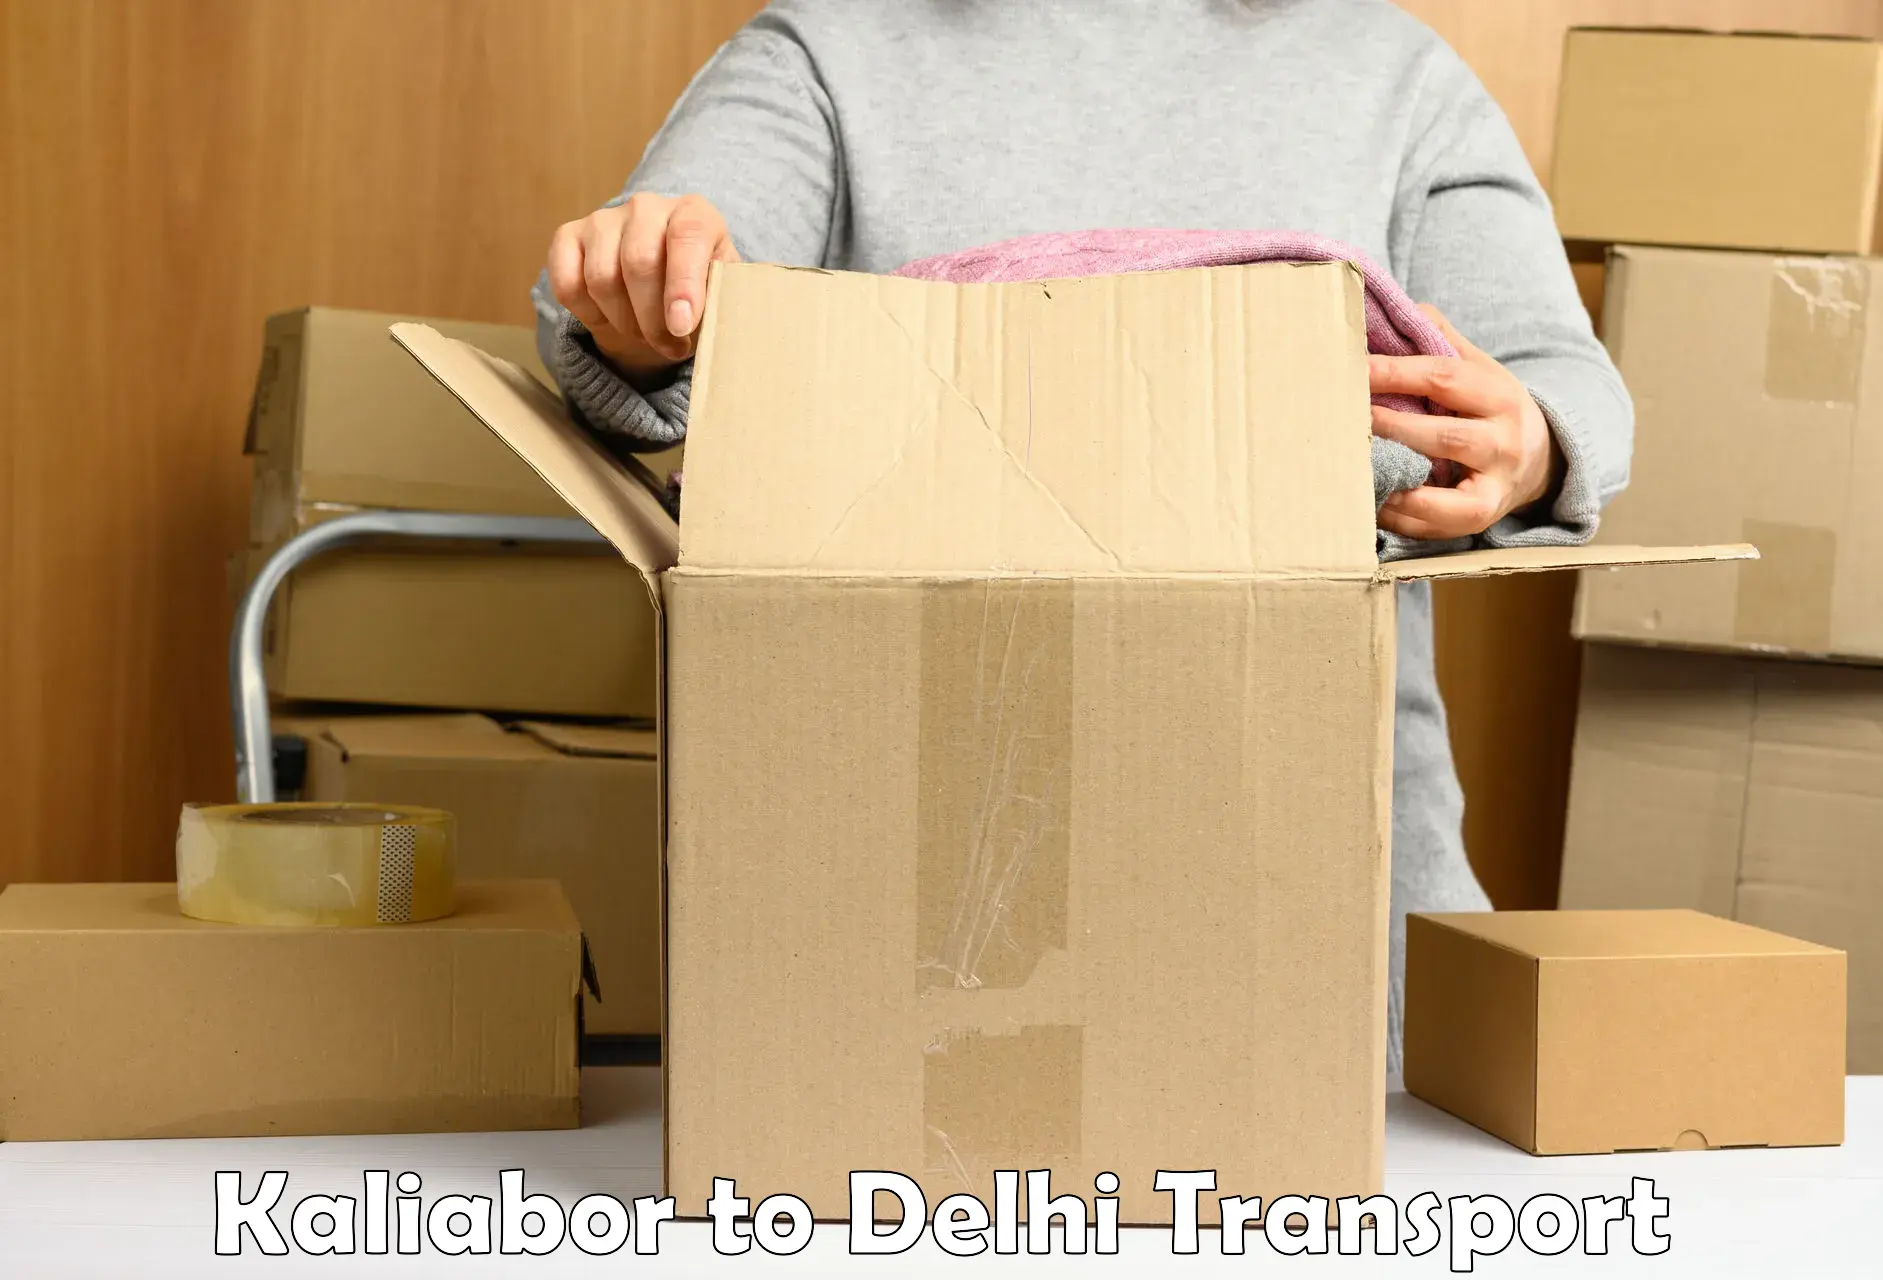 Delivery service Kaliabor to IIT Delhi